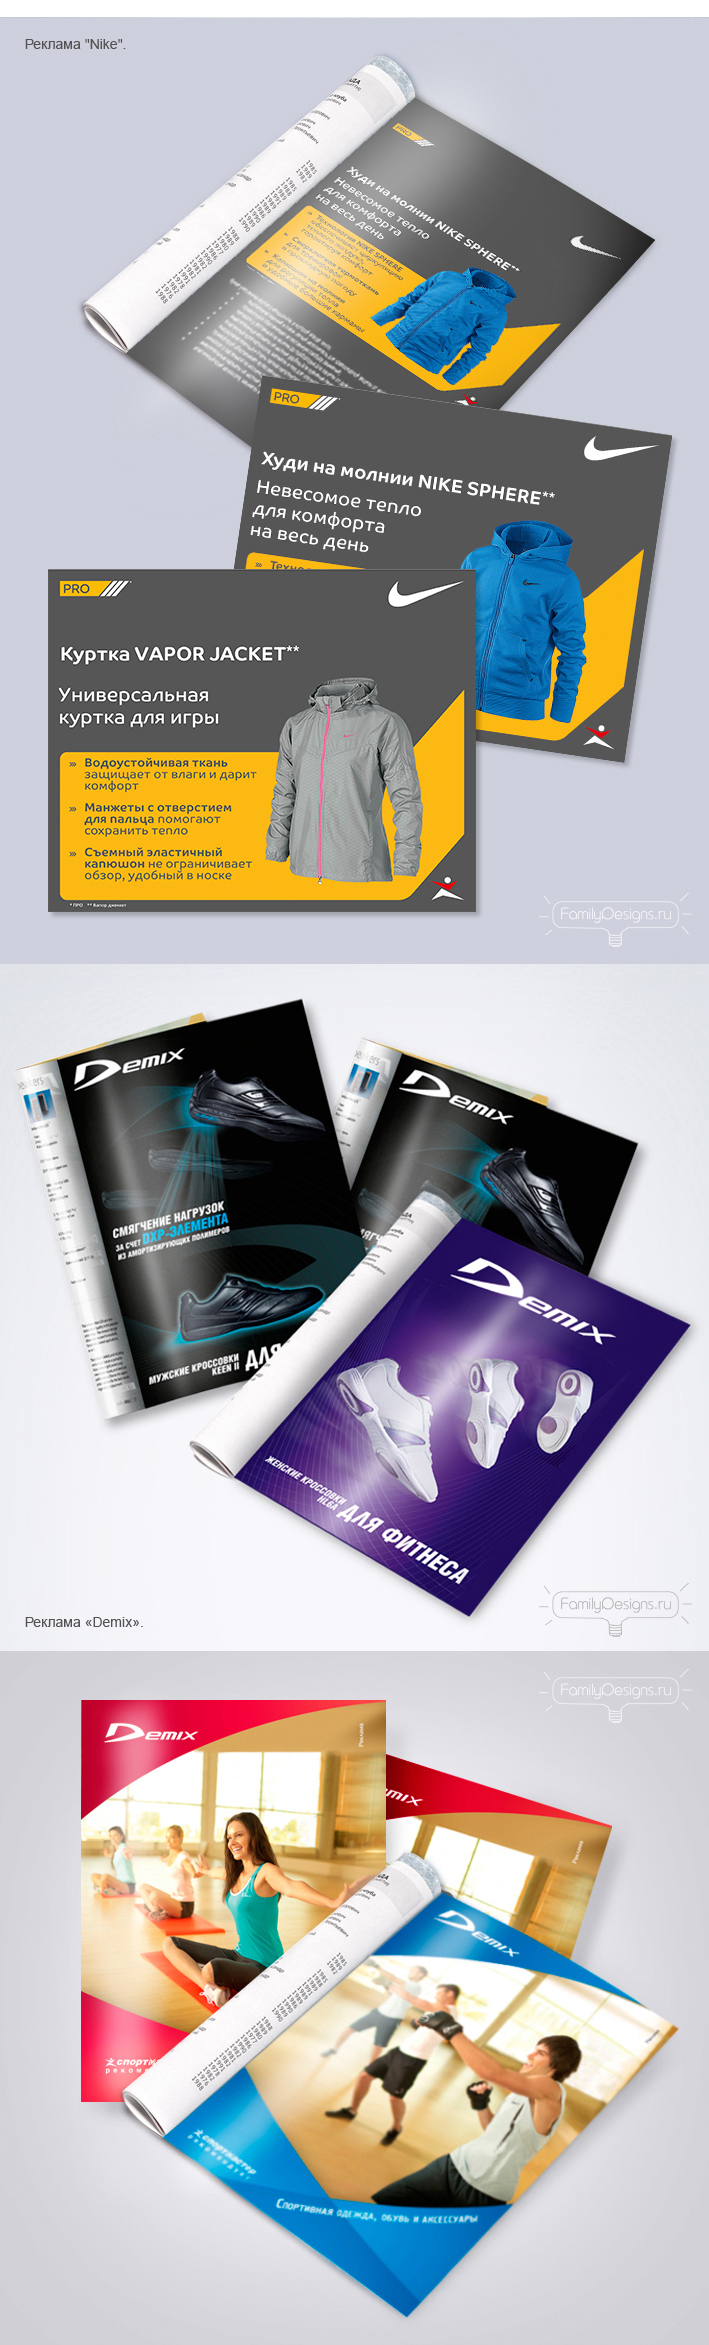 Реклама спортивной одежды и обуви «Nike» и «Demix». - Фрилансер Family Designs Vl-art - Портфолио - Работа #2537627